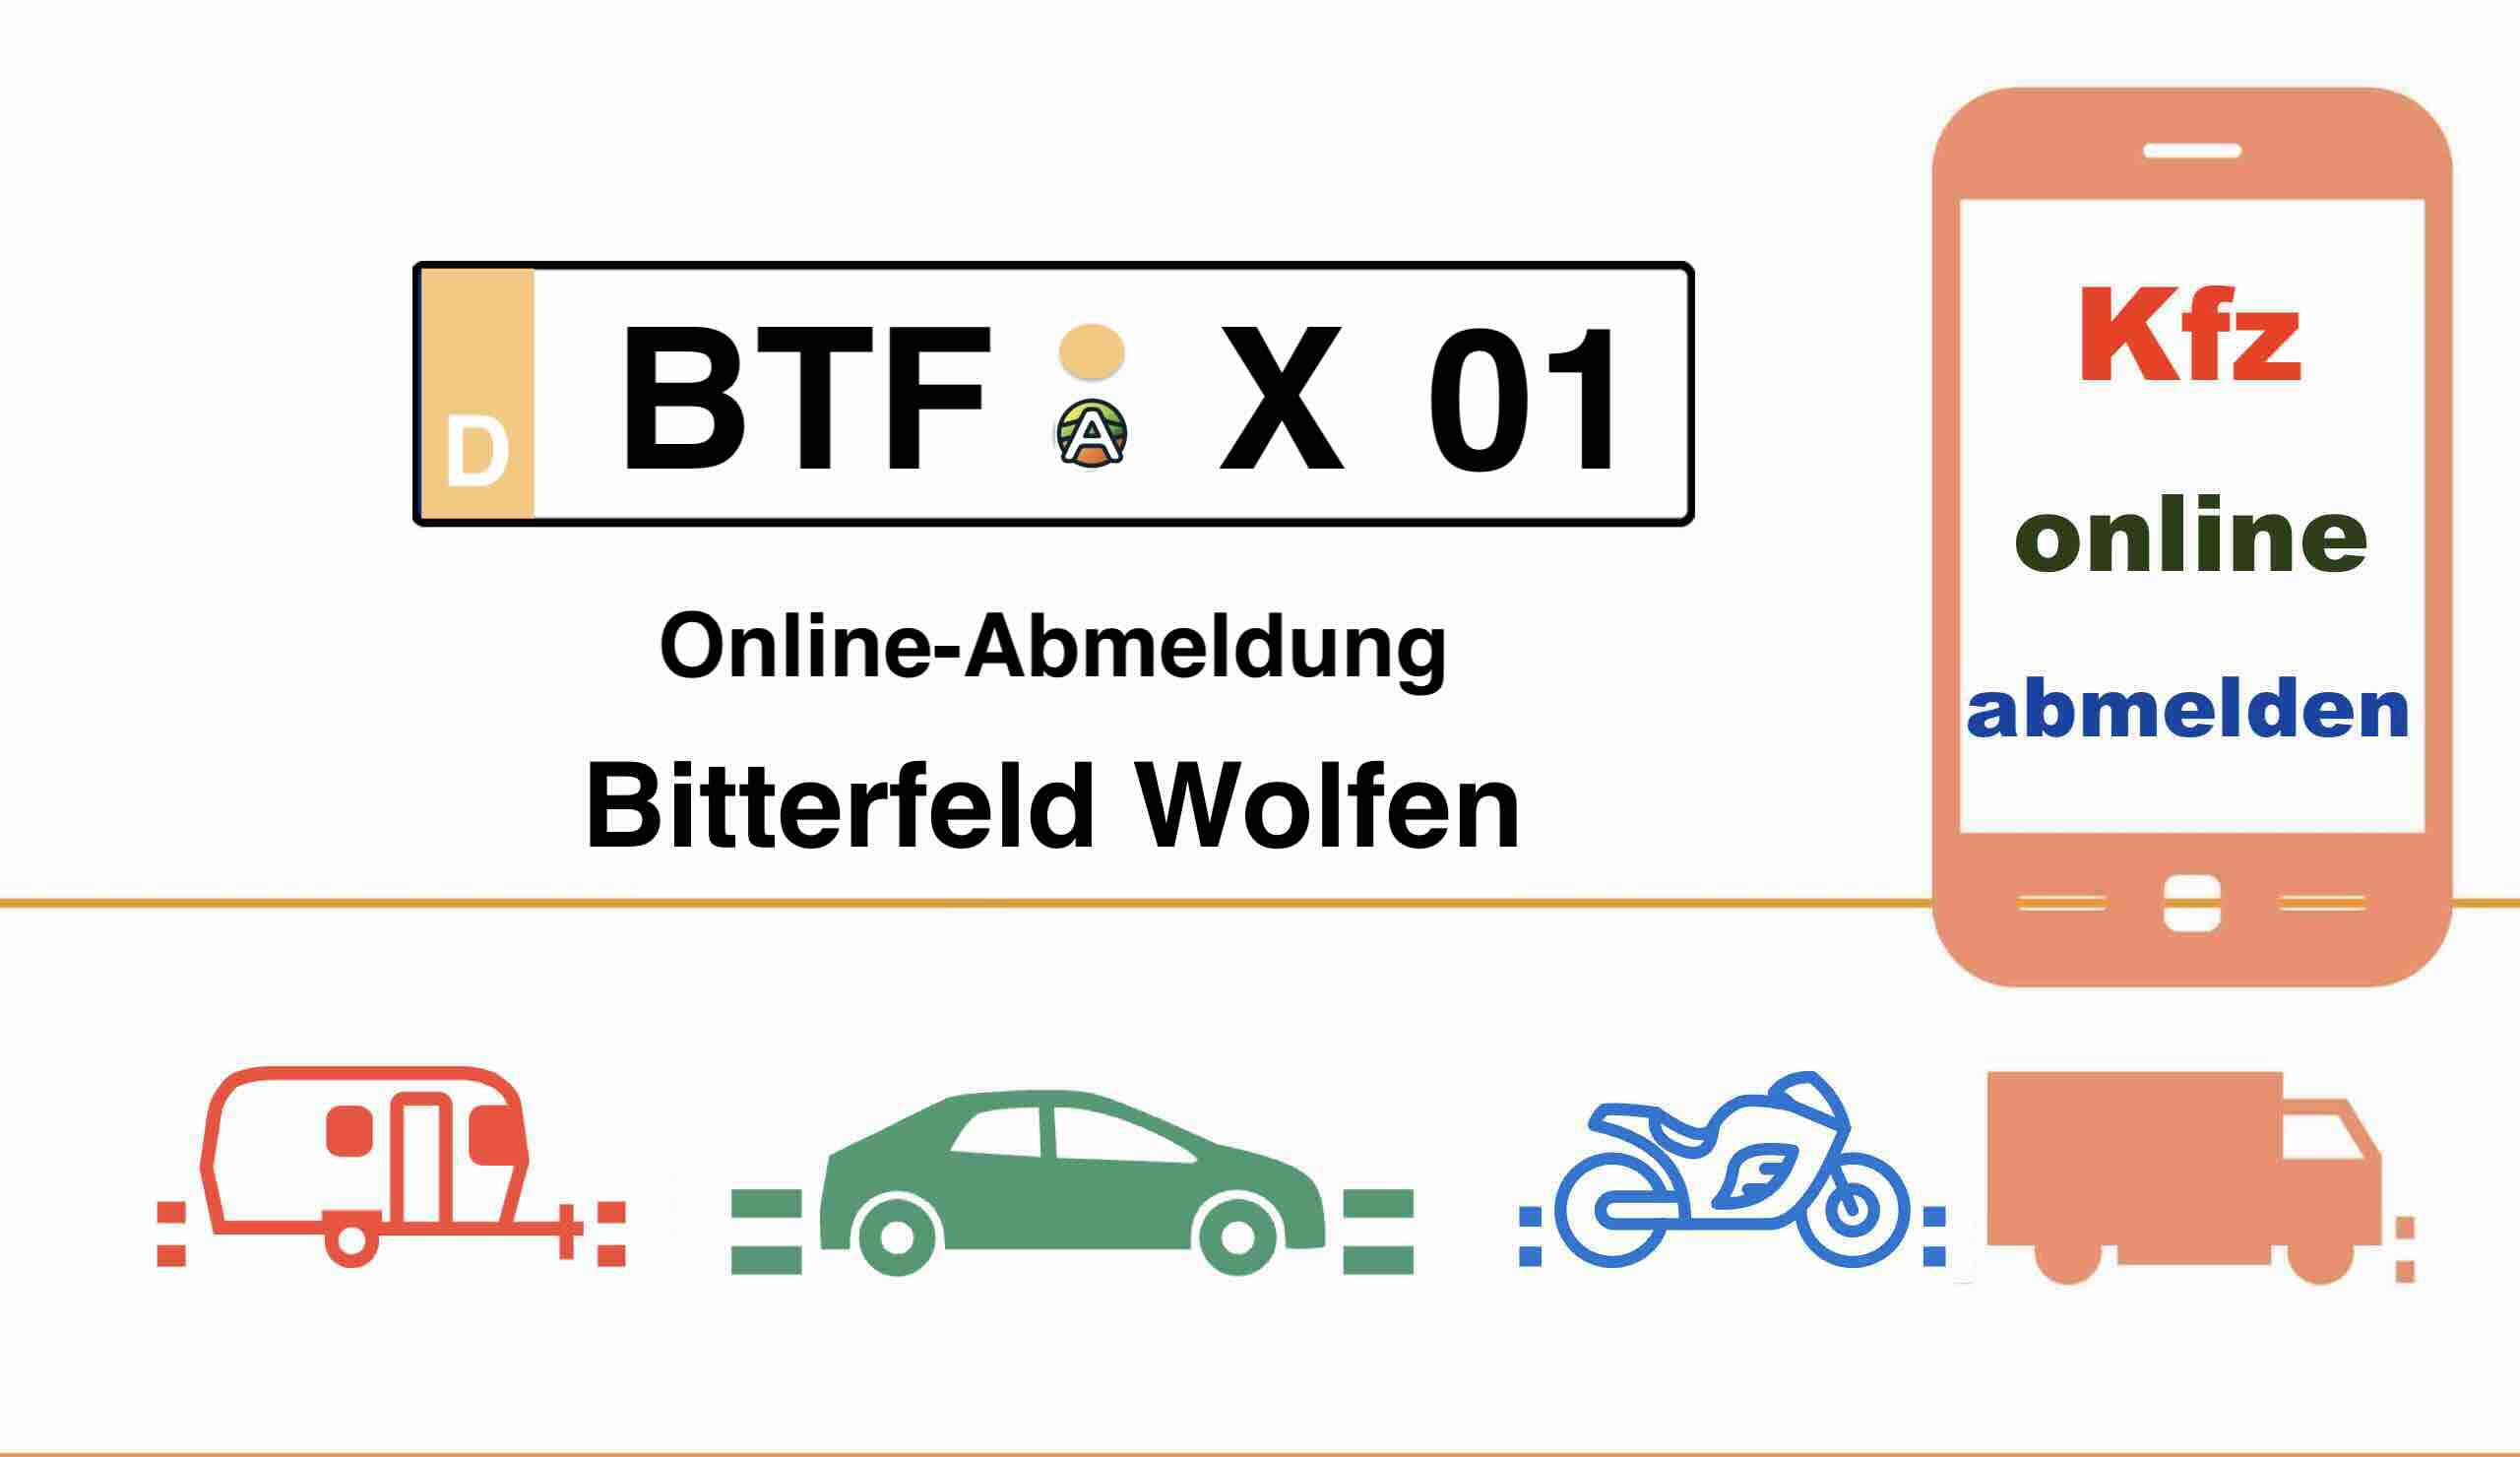 Online-Abmeldung in Bitterfeld Wolfen 